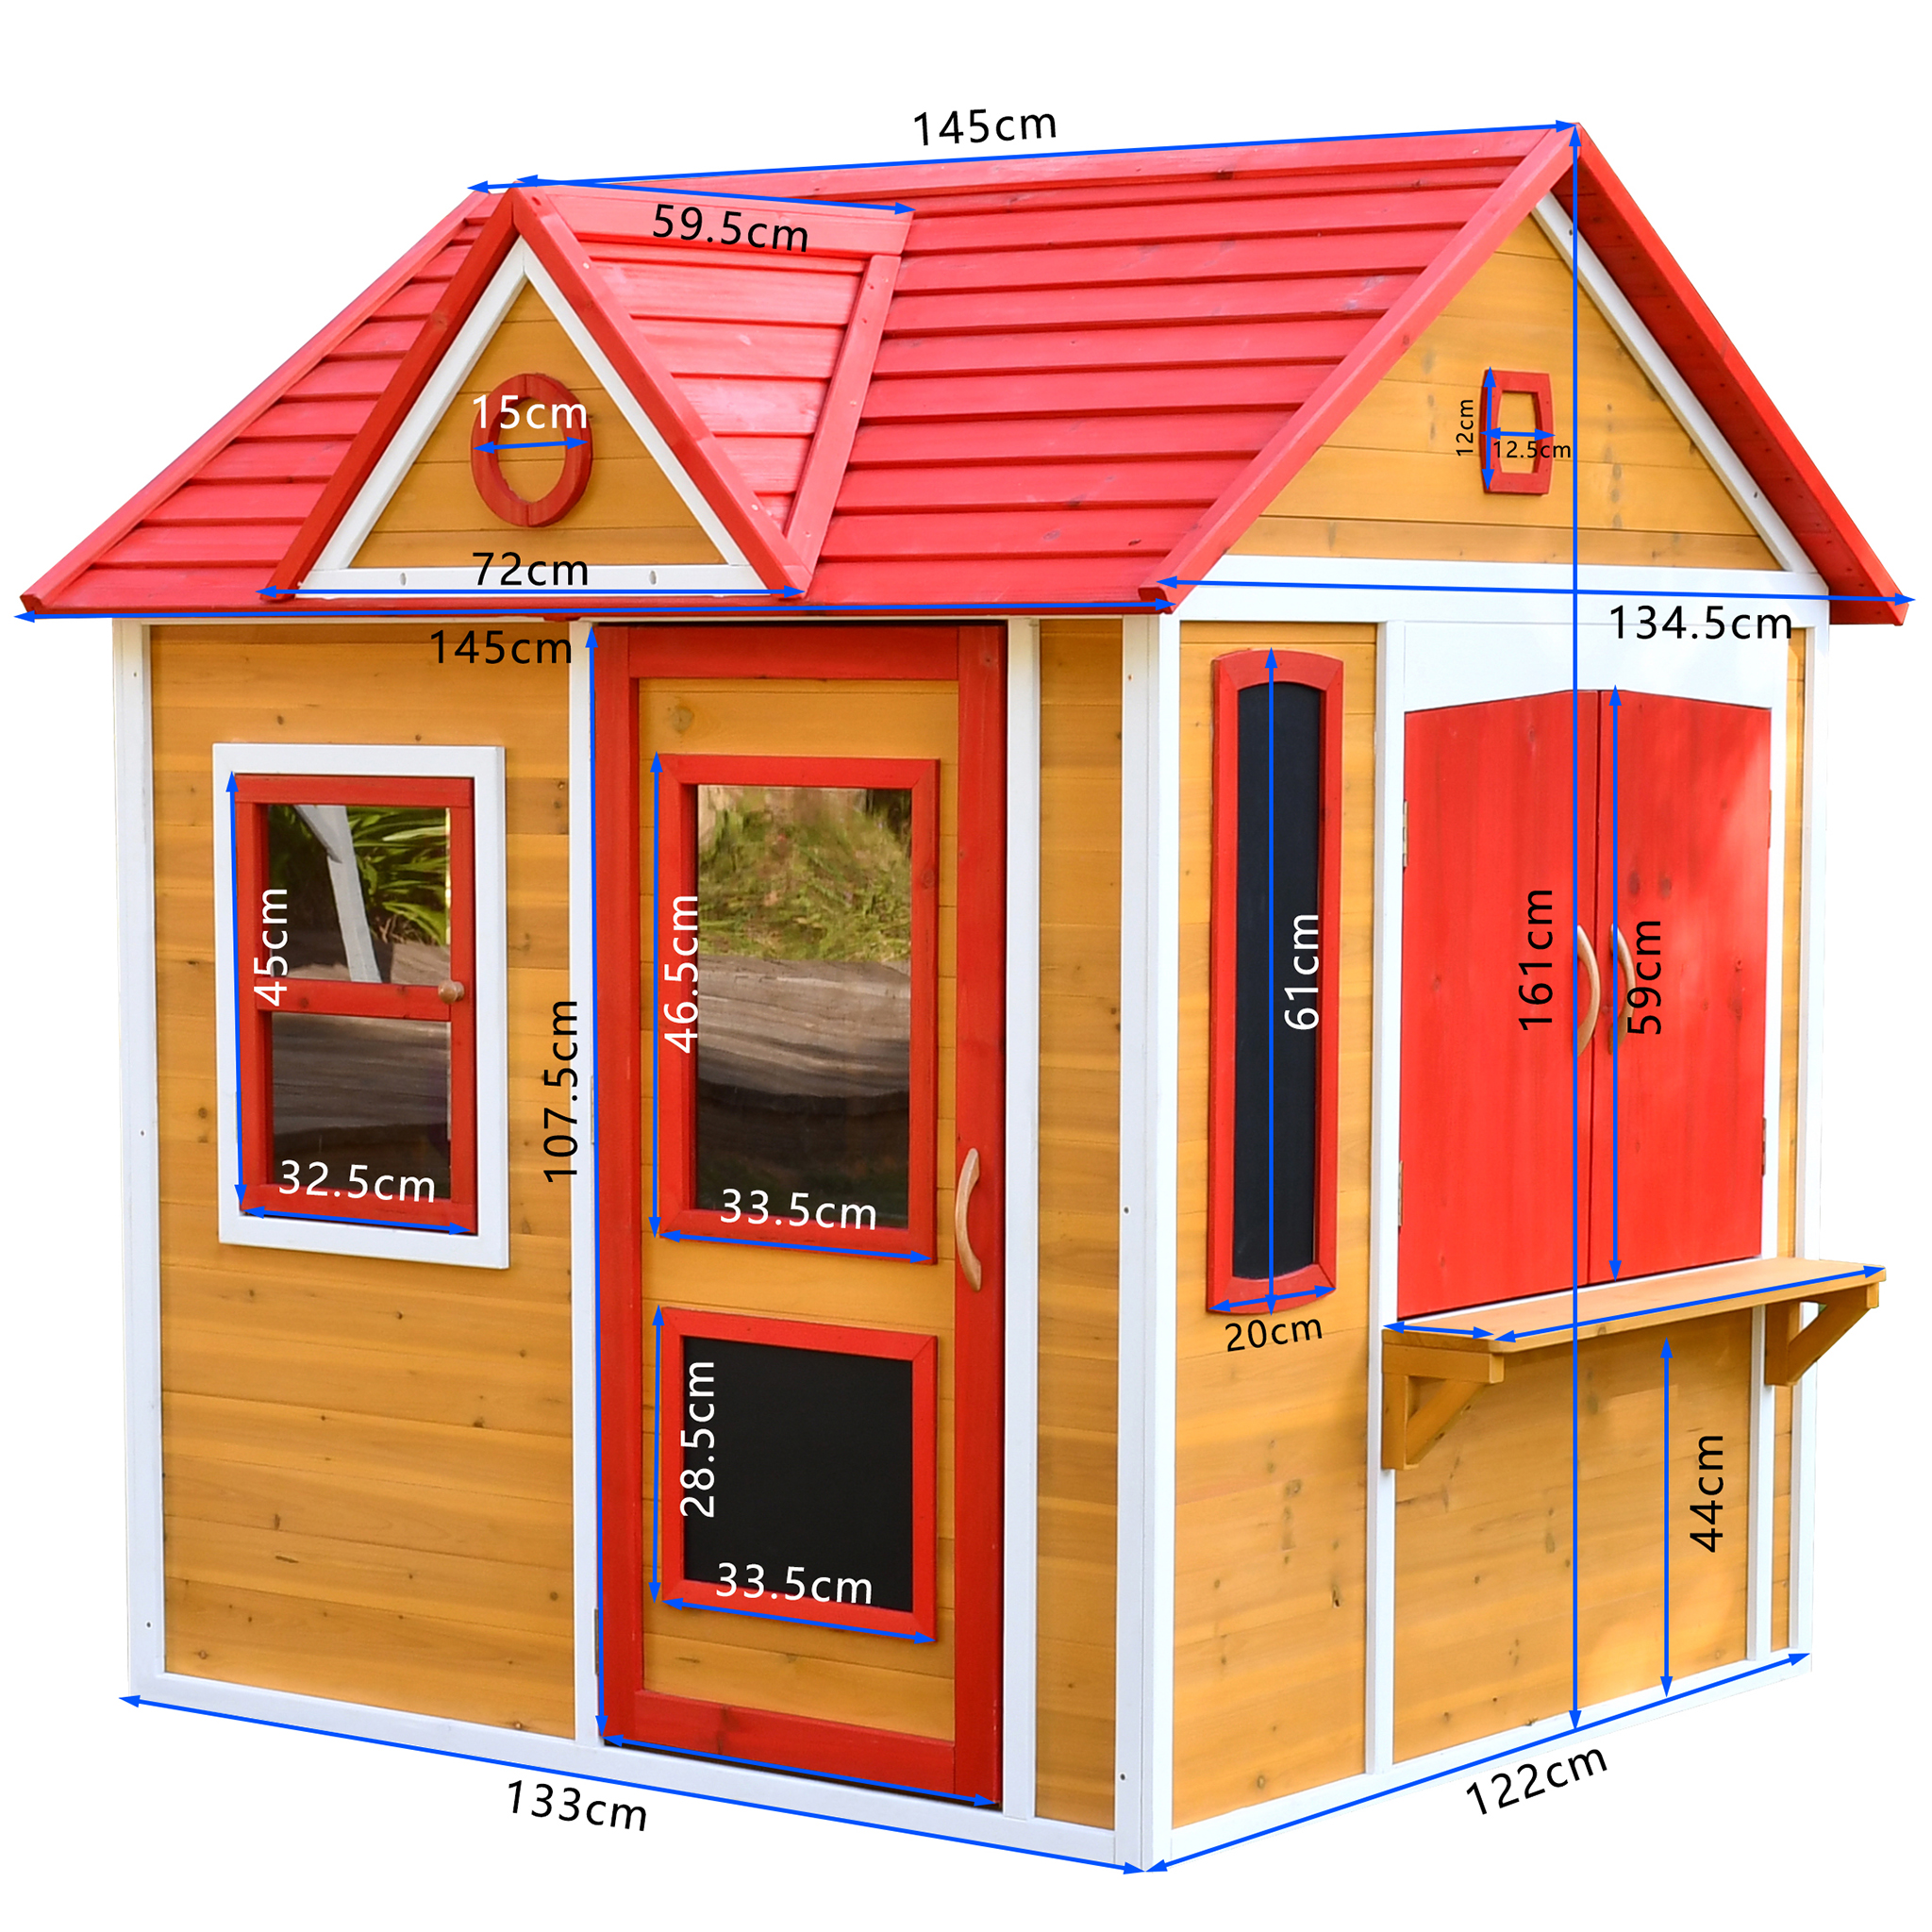 Premium Lekstuga i trä 1,8m² | kök & café-lucka | Fönster & dörr med plexiglas